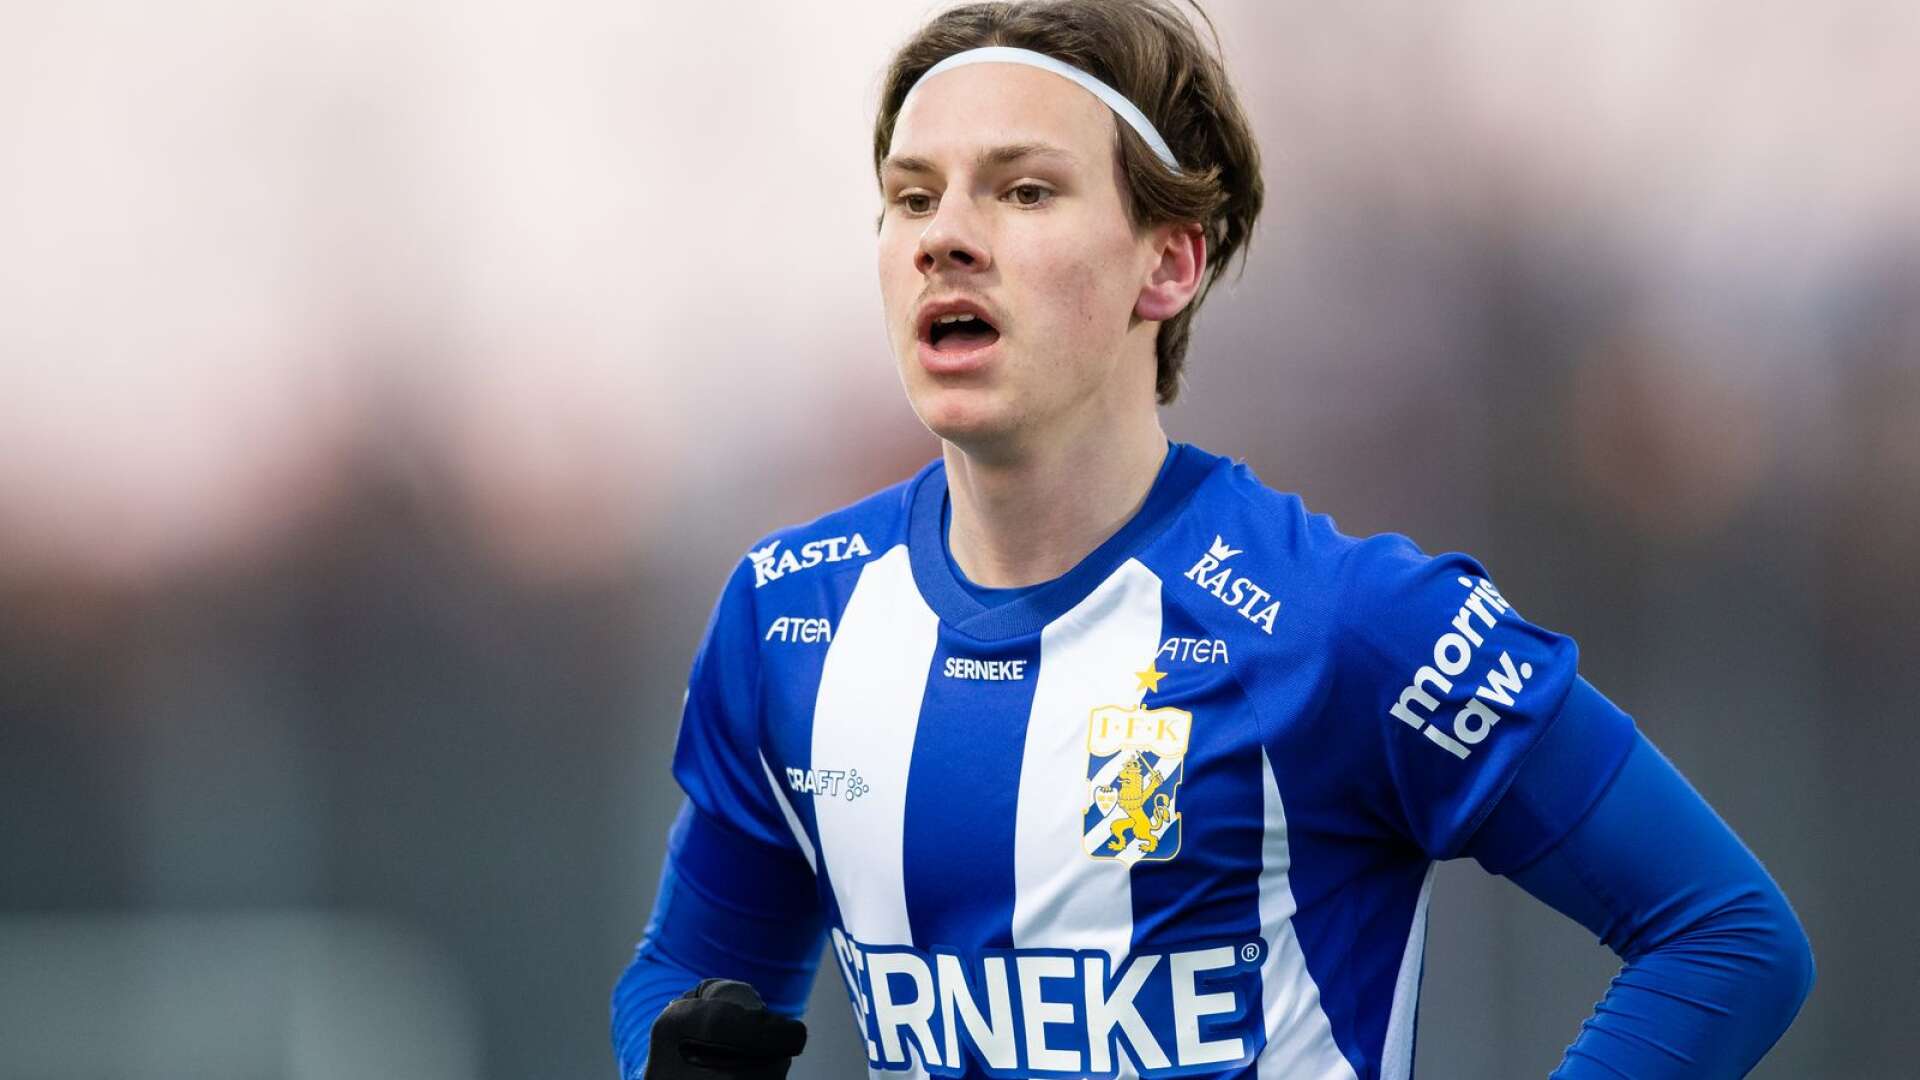 Lucas Kåhed från Säffle har haft ett skadefyllt år och inte kunnat spela något. Men IFK Göteborg tror på honom och förlänger kontraket.